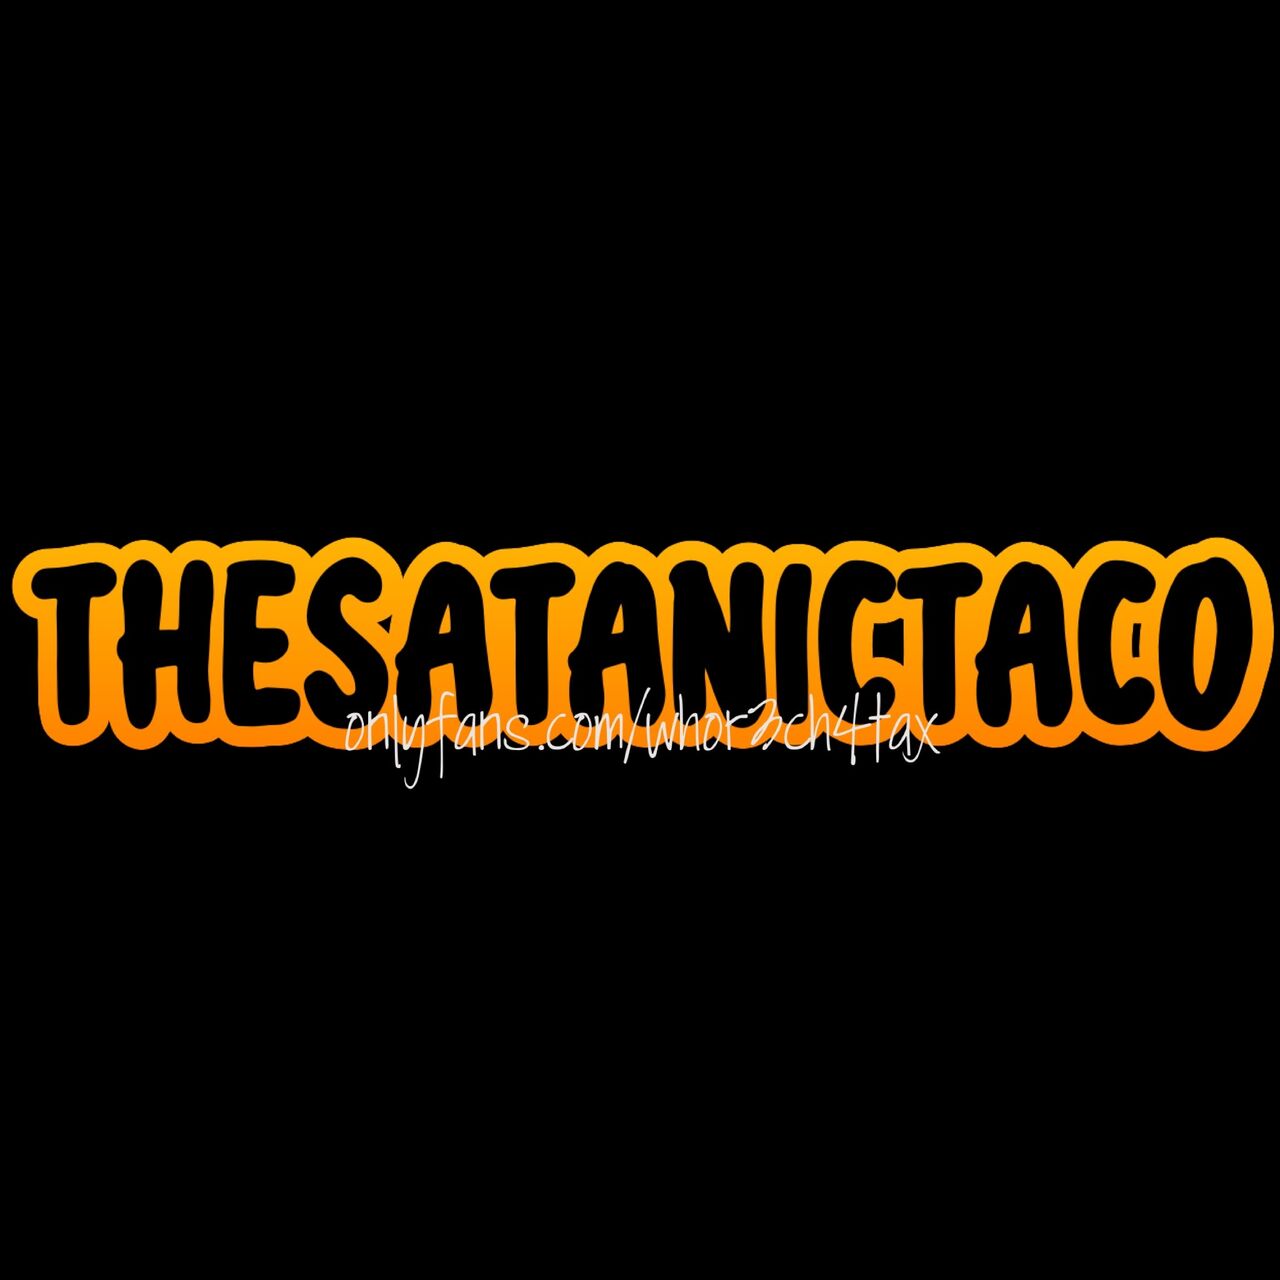 thesatanictaco